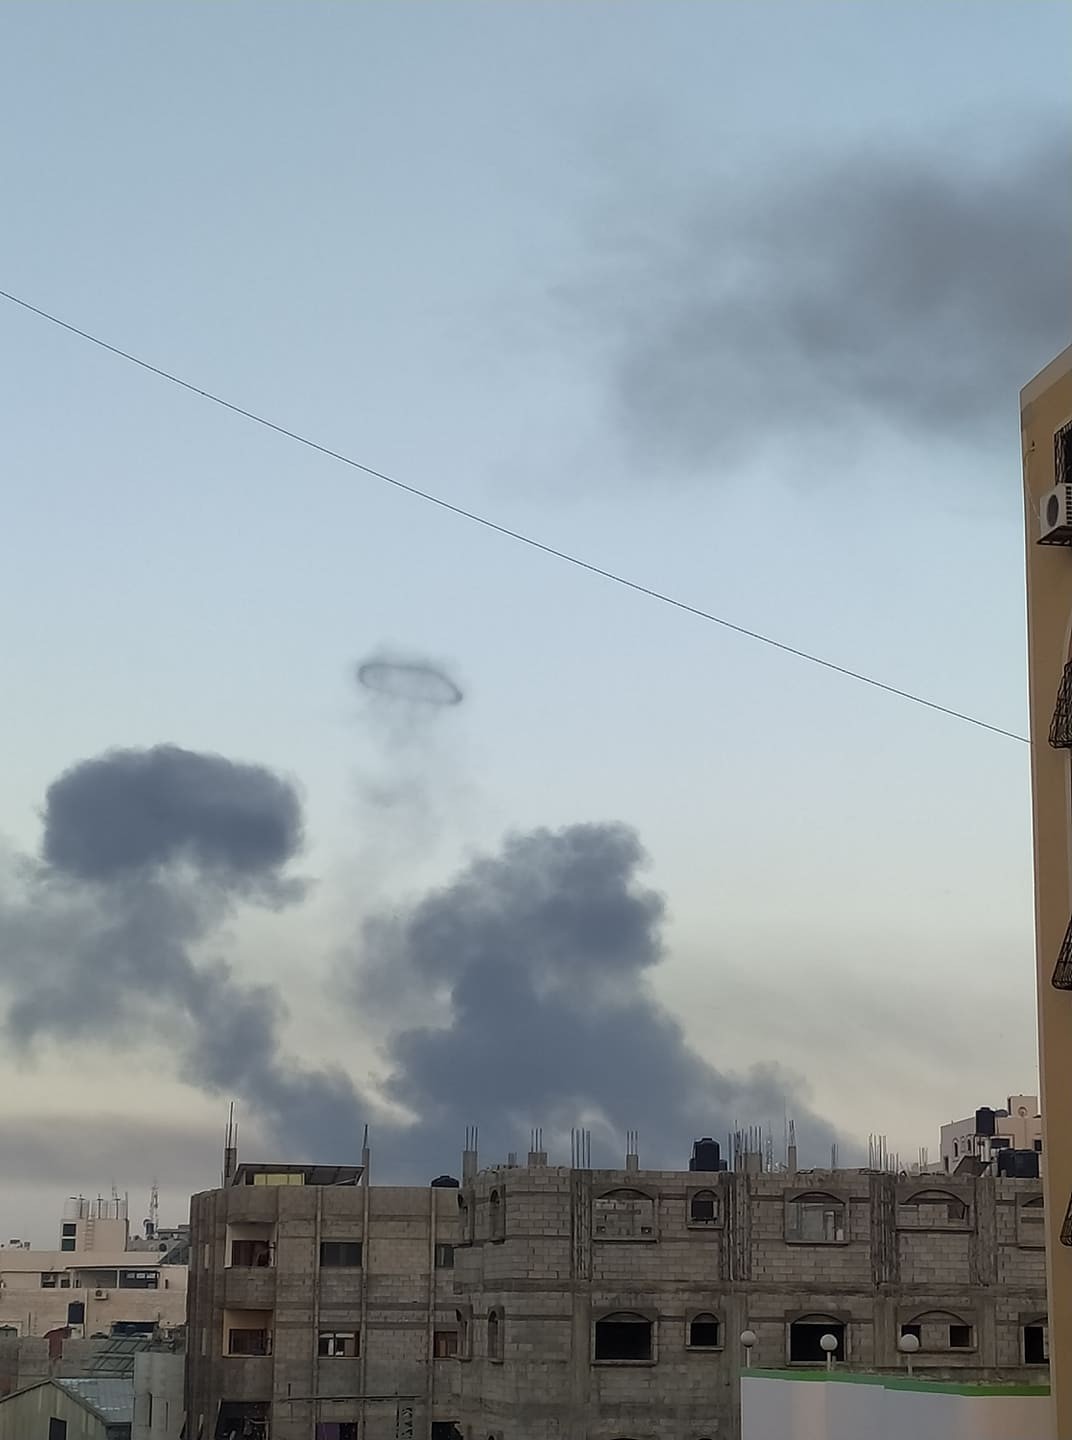 شاهد: الطيران الحربي الإسرائيلي يُدمِّر كافة مباني مقر قيادة الشرطة بغزة